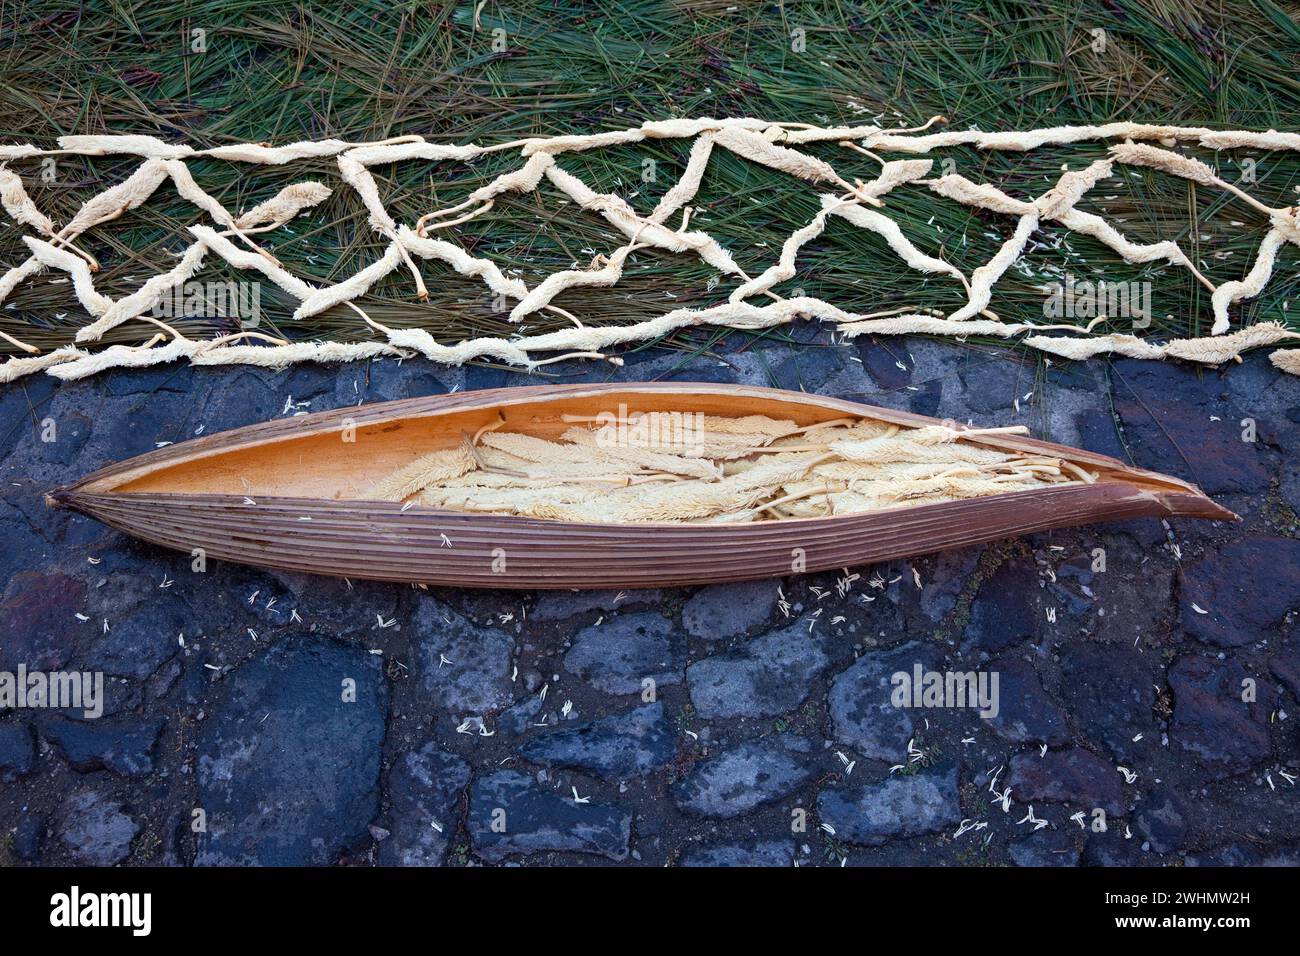 Antigua, Guatemala. Der Inhalt einer Kapsel der Corozo-Palme wird verwendet, um einen Rand entlang einer Alfombra (Teppich) aus Blumen, Kiefernnadeln und anderen zu bilden Stockfoto